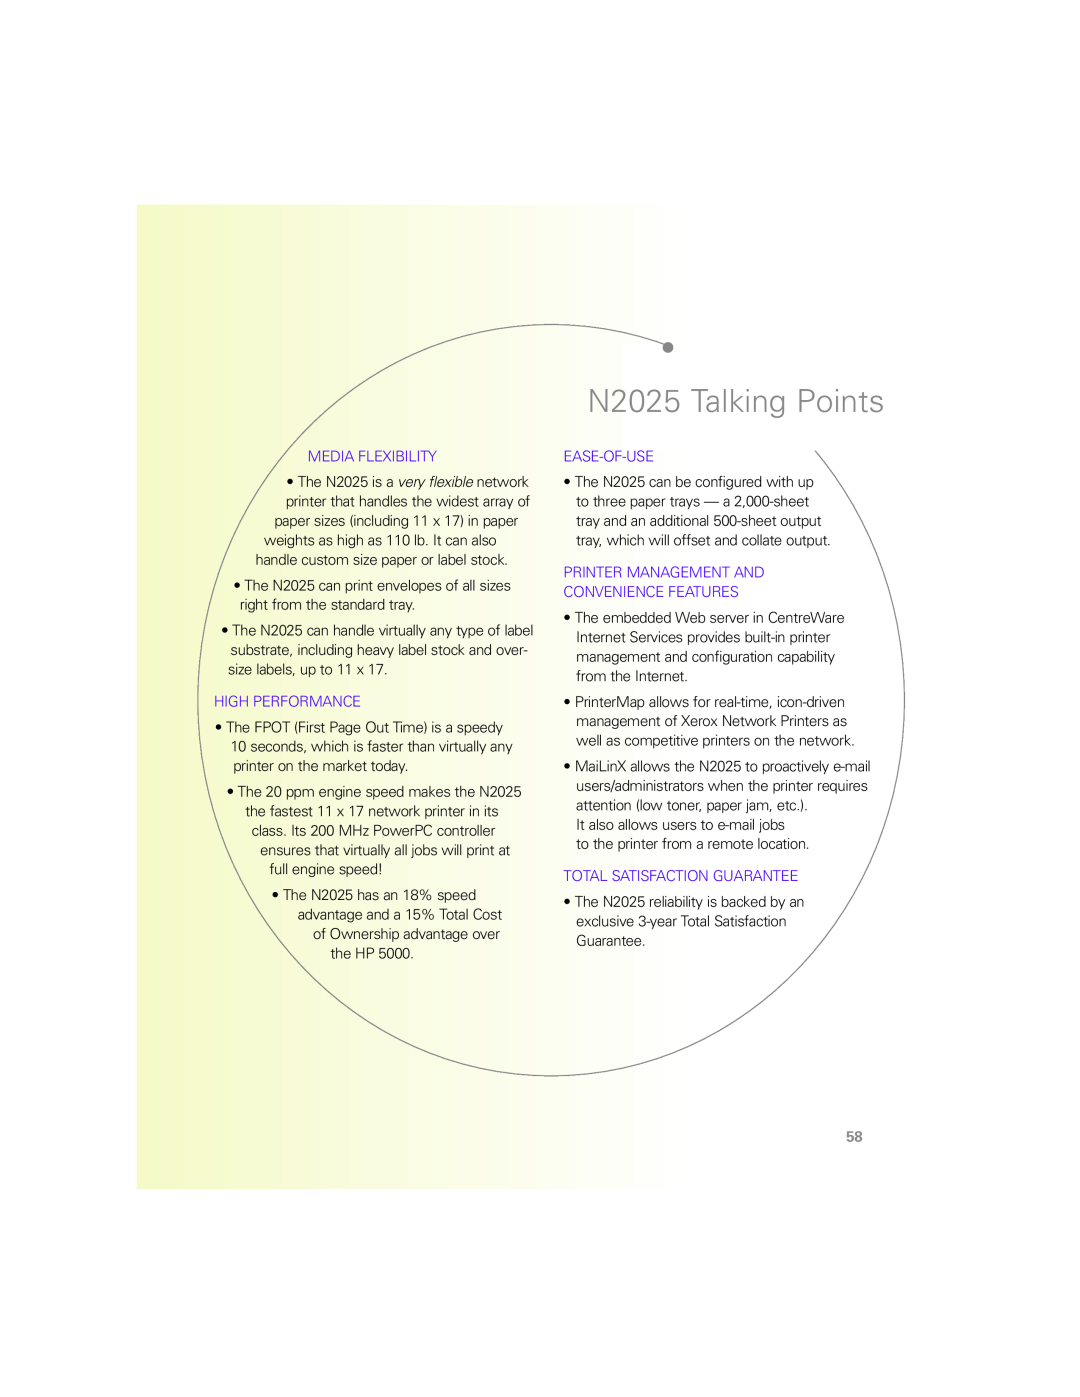 Xerox N Series manual N2025 Talking Points 